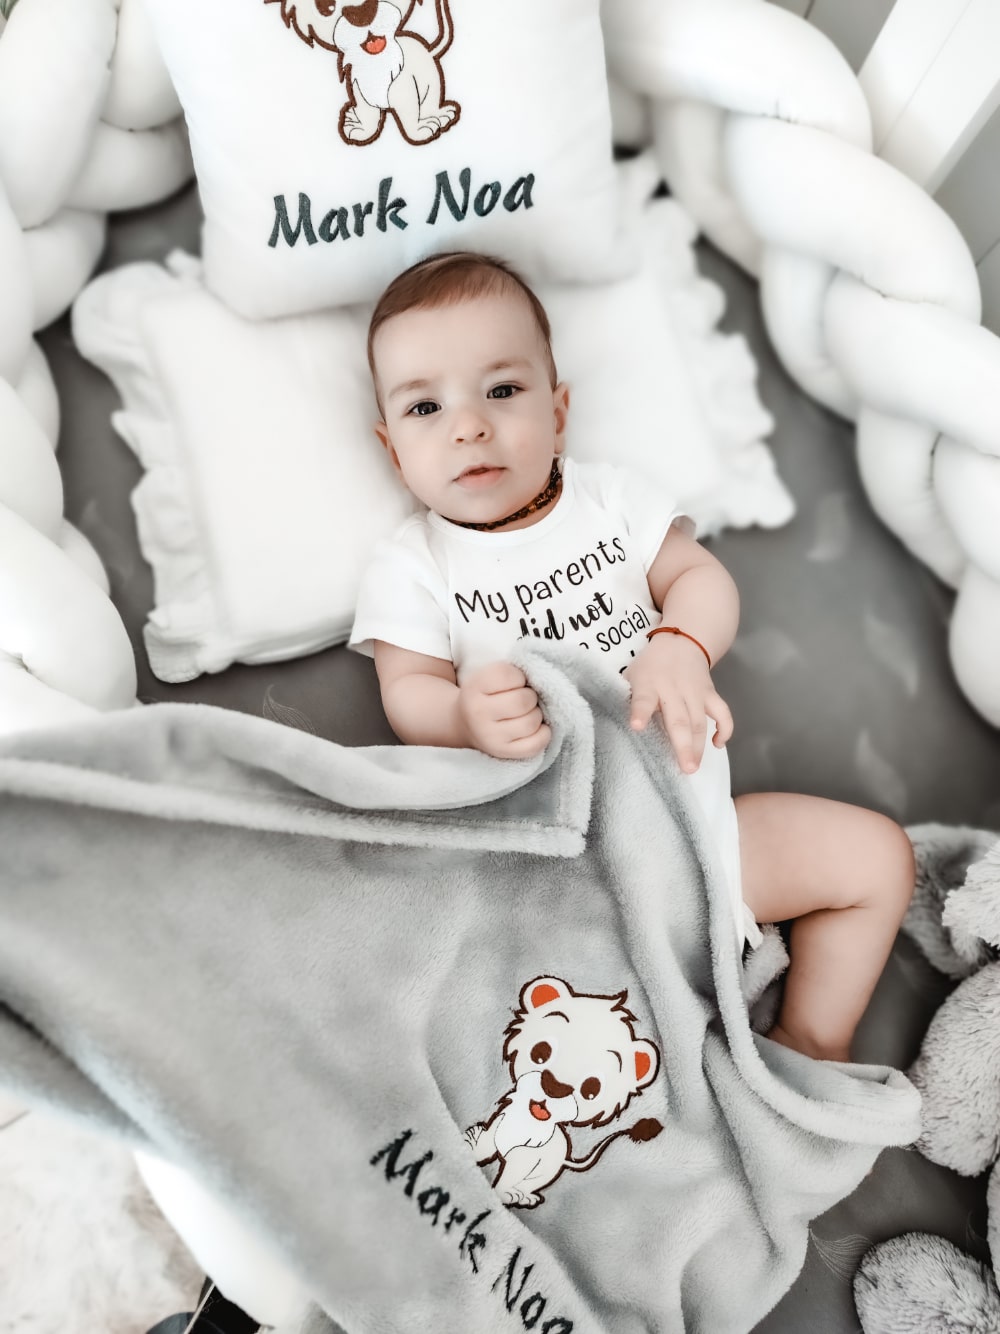 Prekrasni dječačić mirno odmara u svom krevetiću, zagrljen mekanim i ugodnim personaliziranim jastučićem i dekicom, prilagođenim s njegovim imenom i šarmantnim dizajnom.